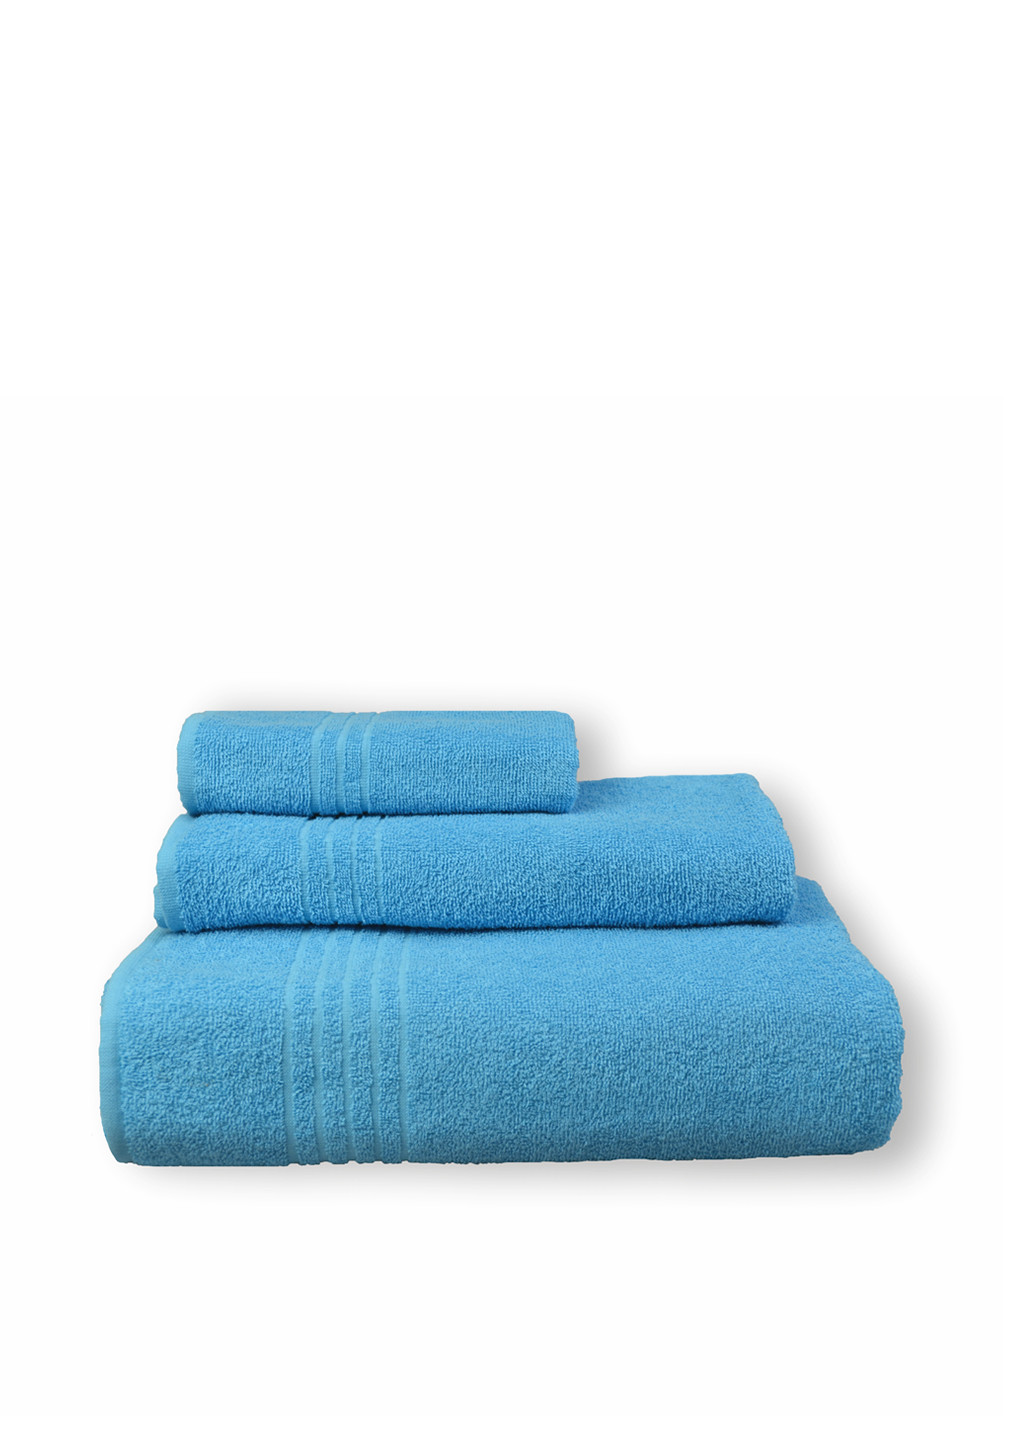 Home Line полотенце, 70х140 см однотонный голубой производство - Узбекистан